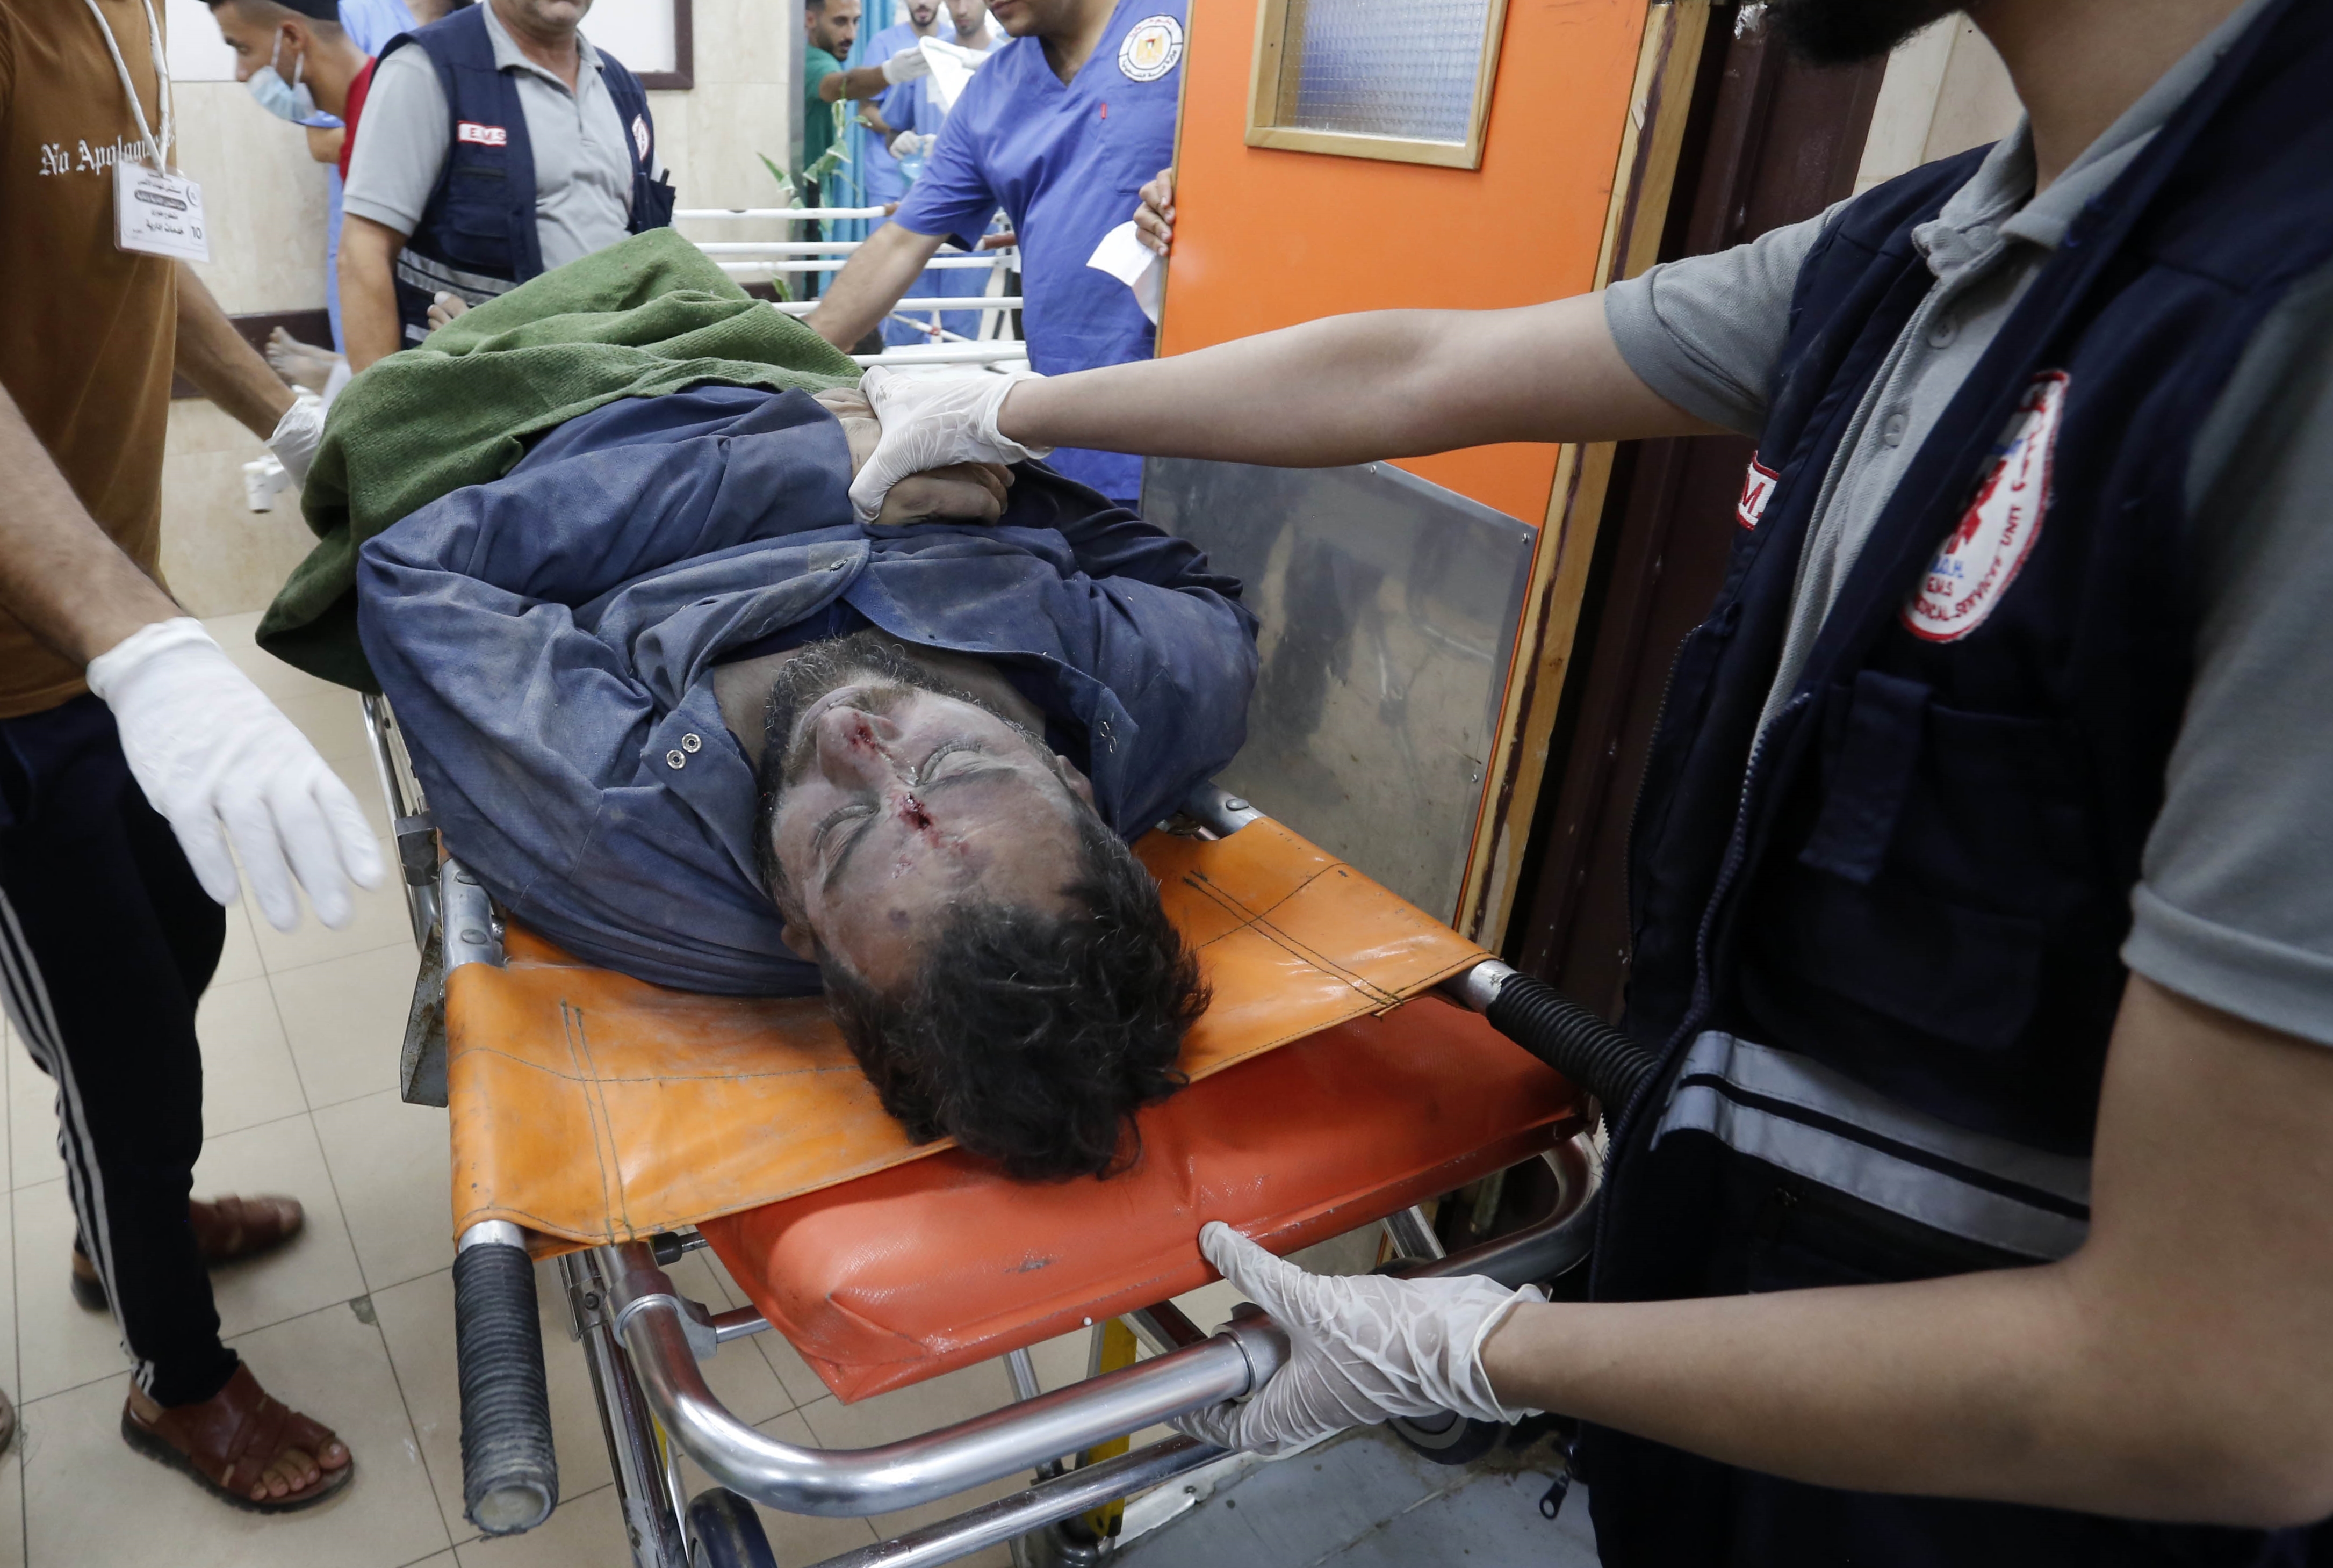 Siyonist terör devleti Gazze'de sivilleri katletmeye devam ediyor